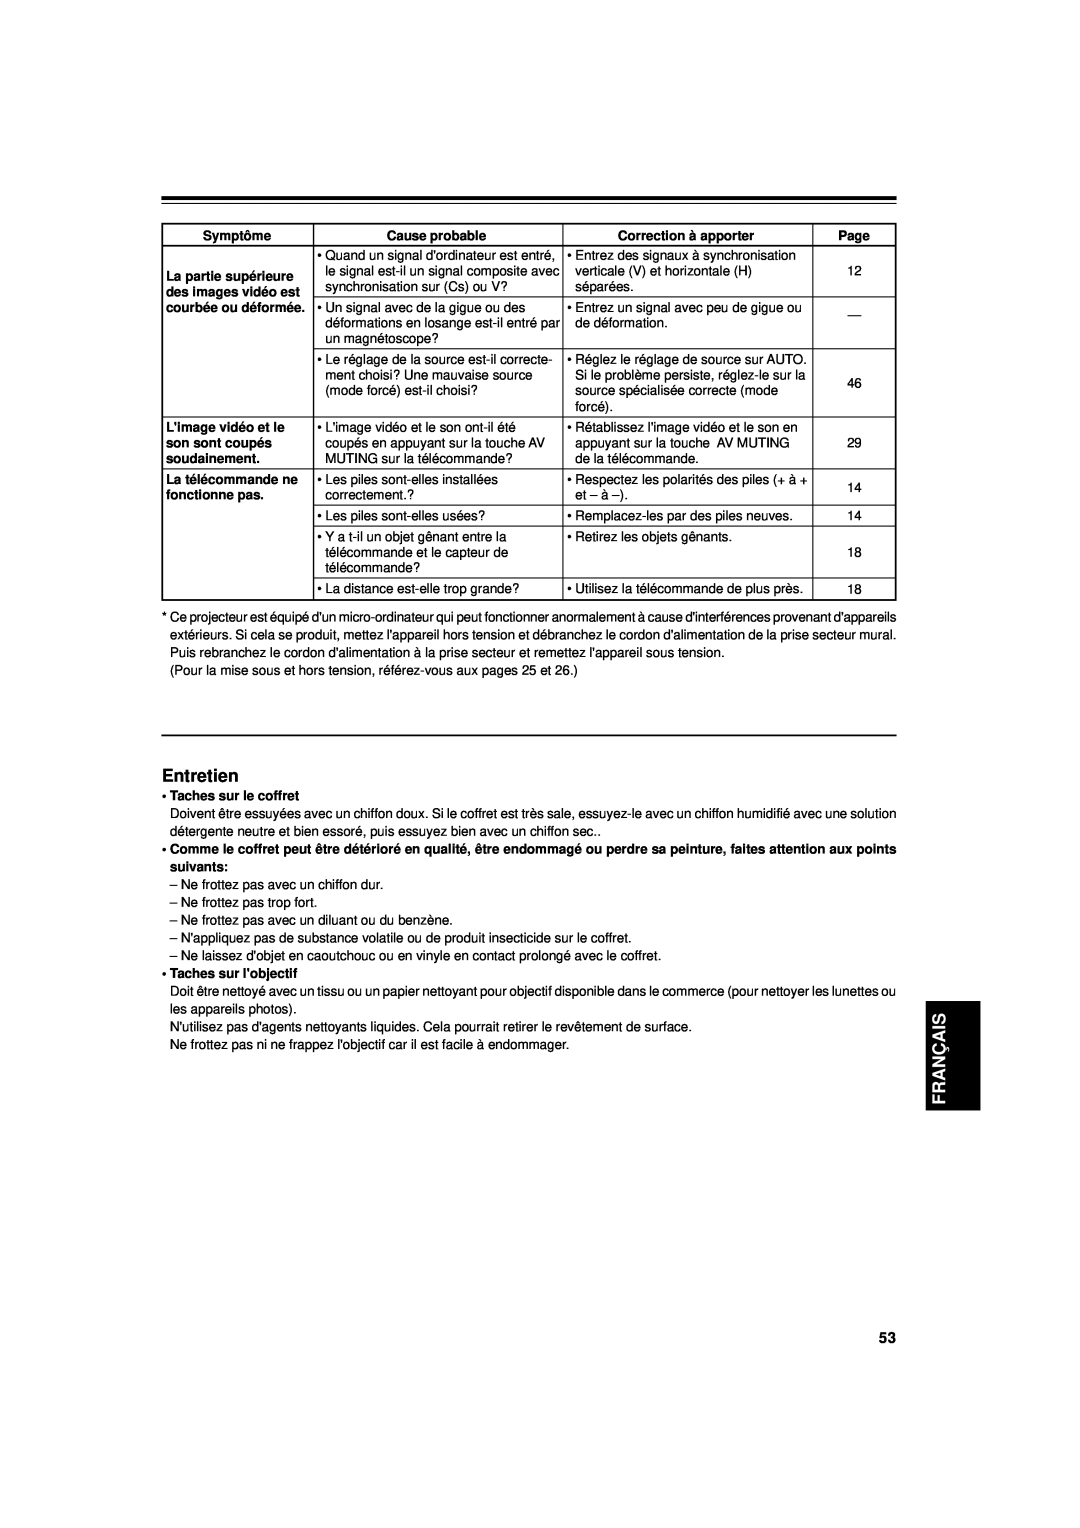 JVC DLA-G11U manual Entretien, Français, Symptôme, Cause probable, Correction à apporter, Page, La partie supérieure 